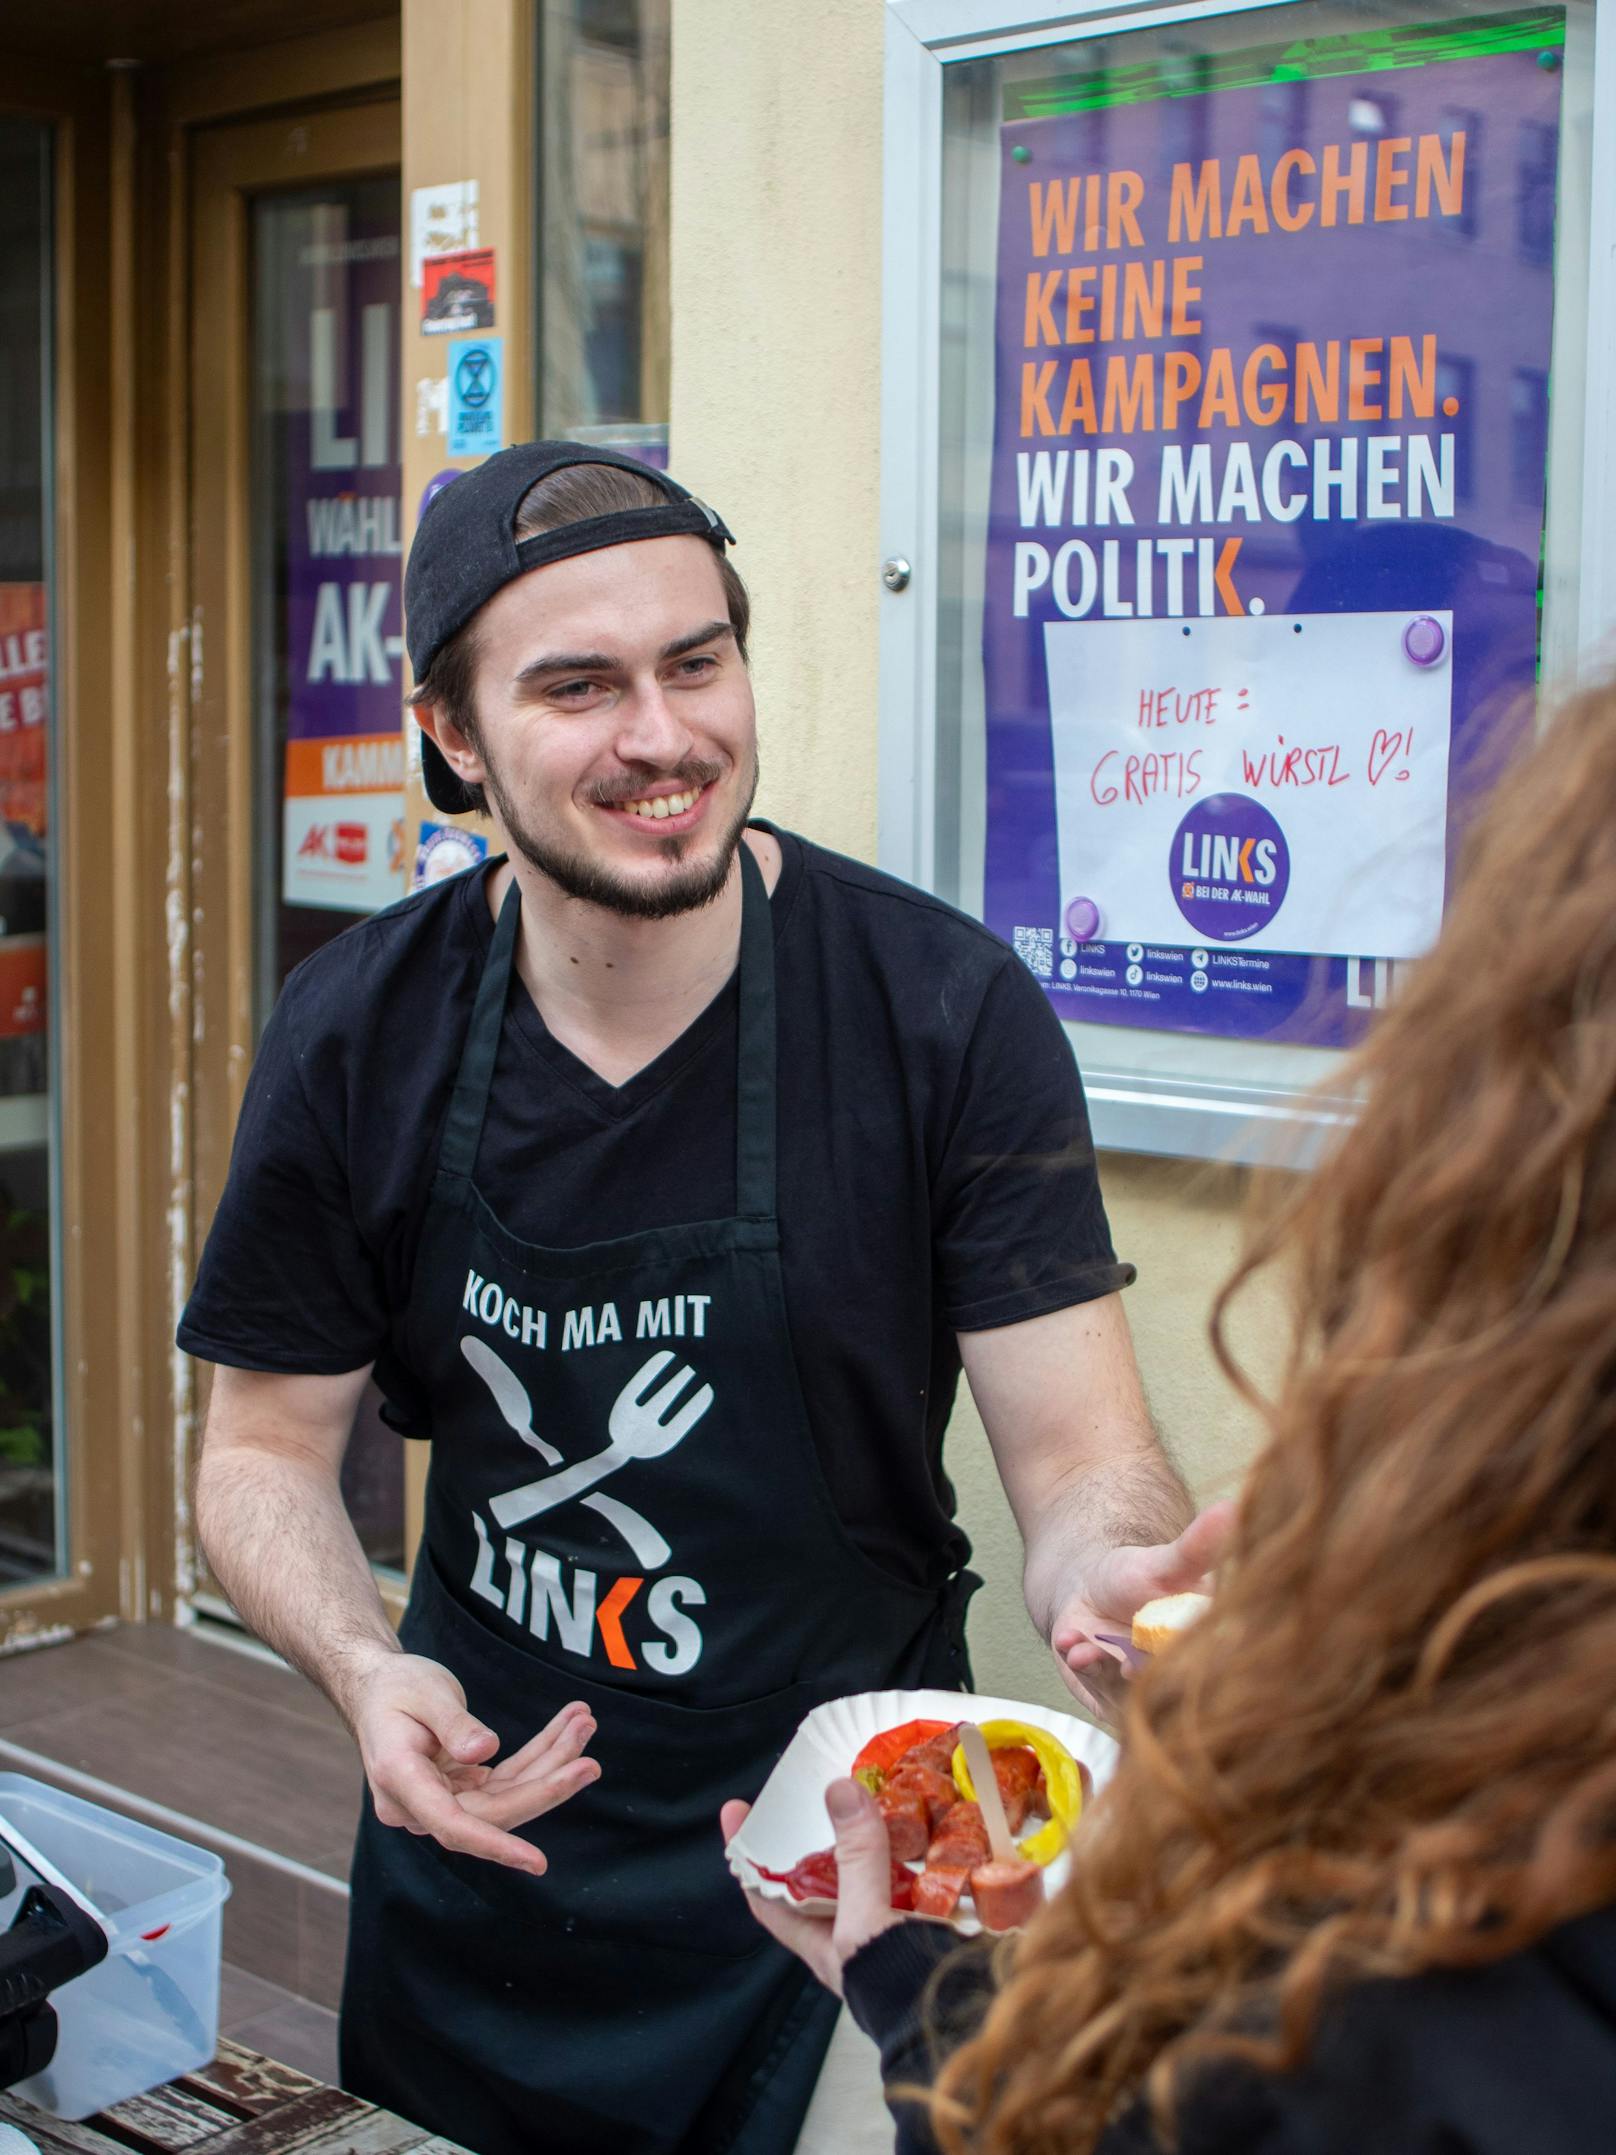 LINKS-Spitzenkandidat Florian Rath will mit gratis Würstel für alle Arbeitsminister Martin Kocher (VP) grillen.